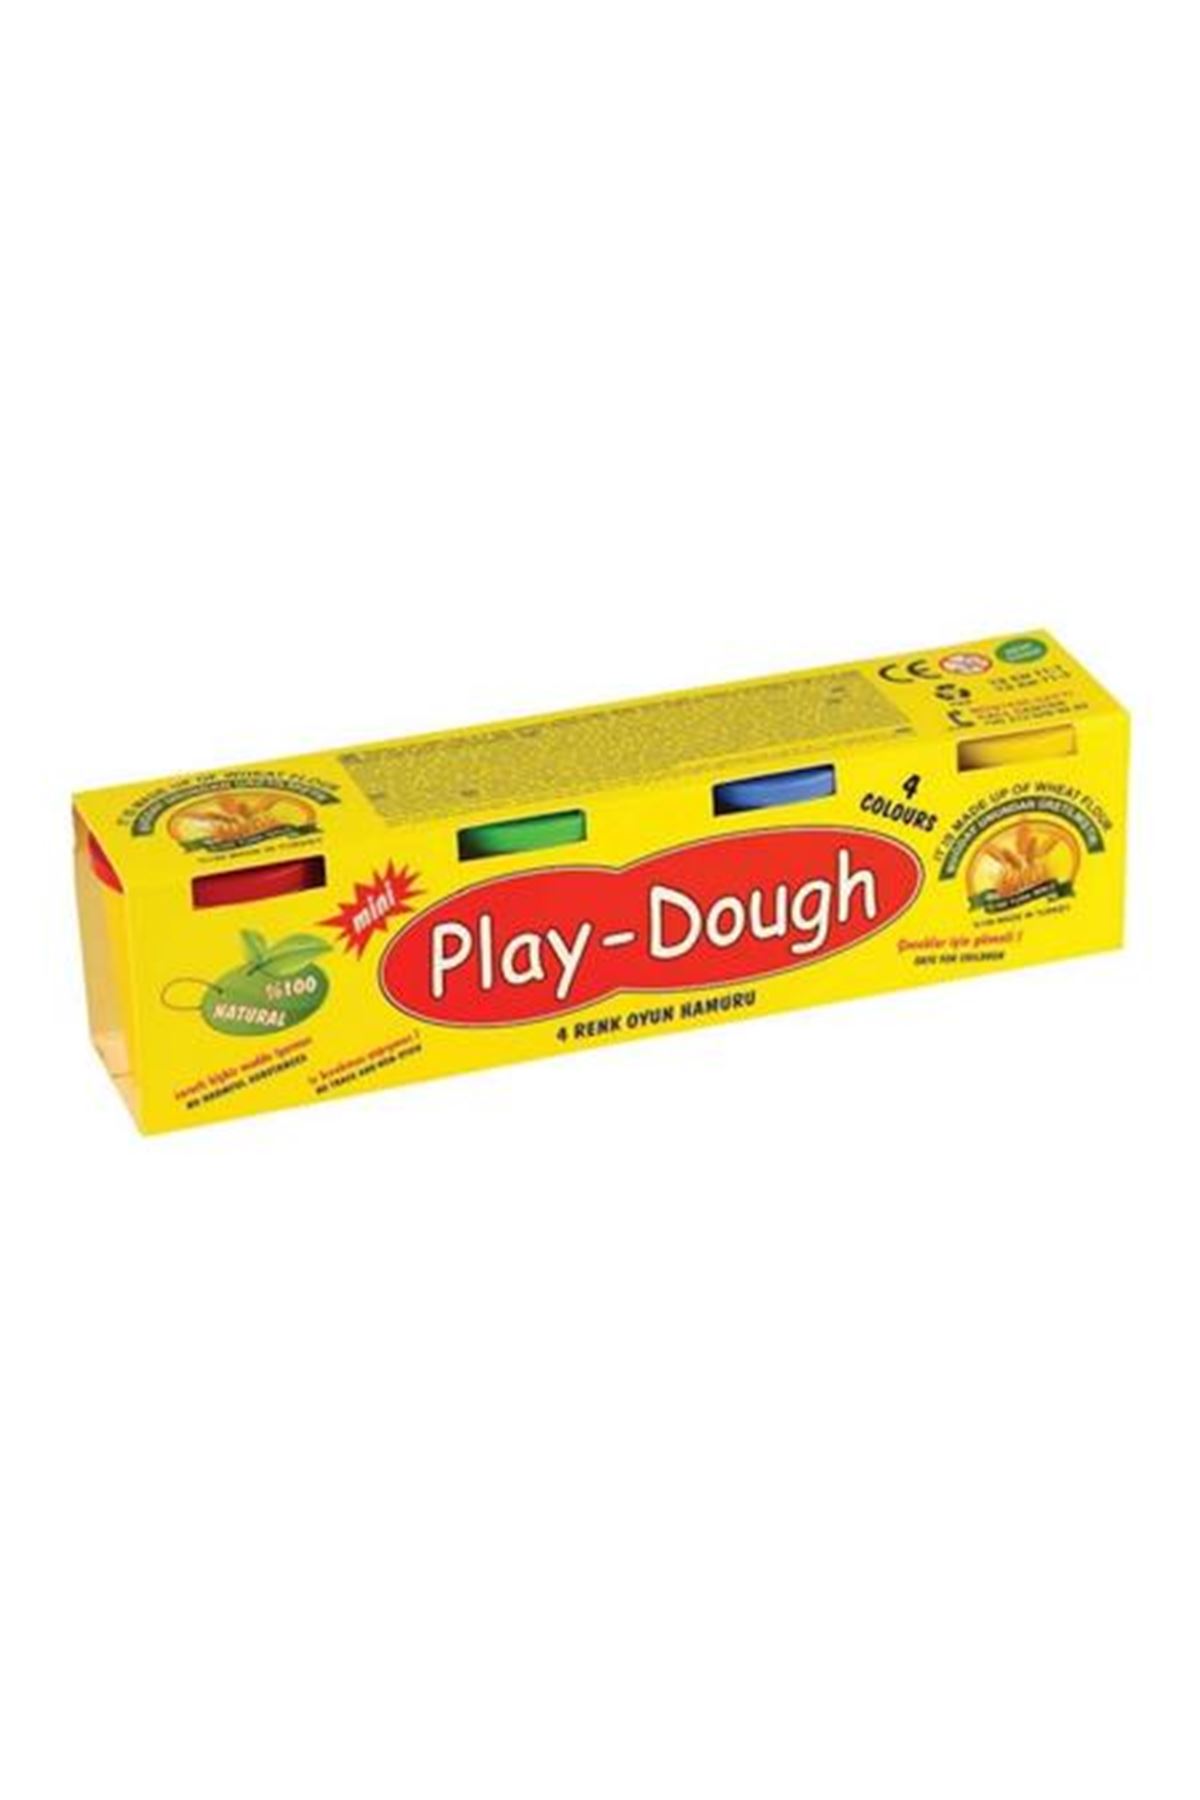 Play Dough Oyun Hamuru 4'lü ERN-005 317018